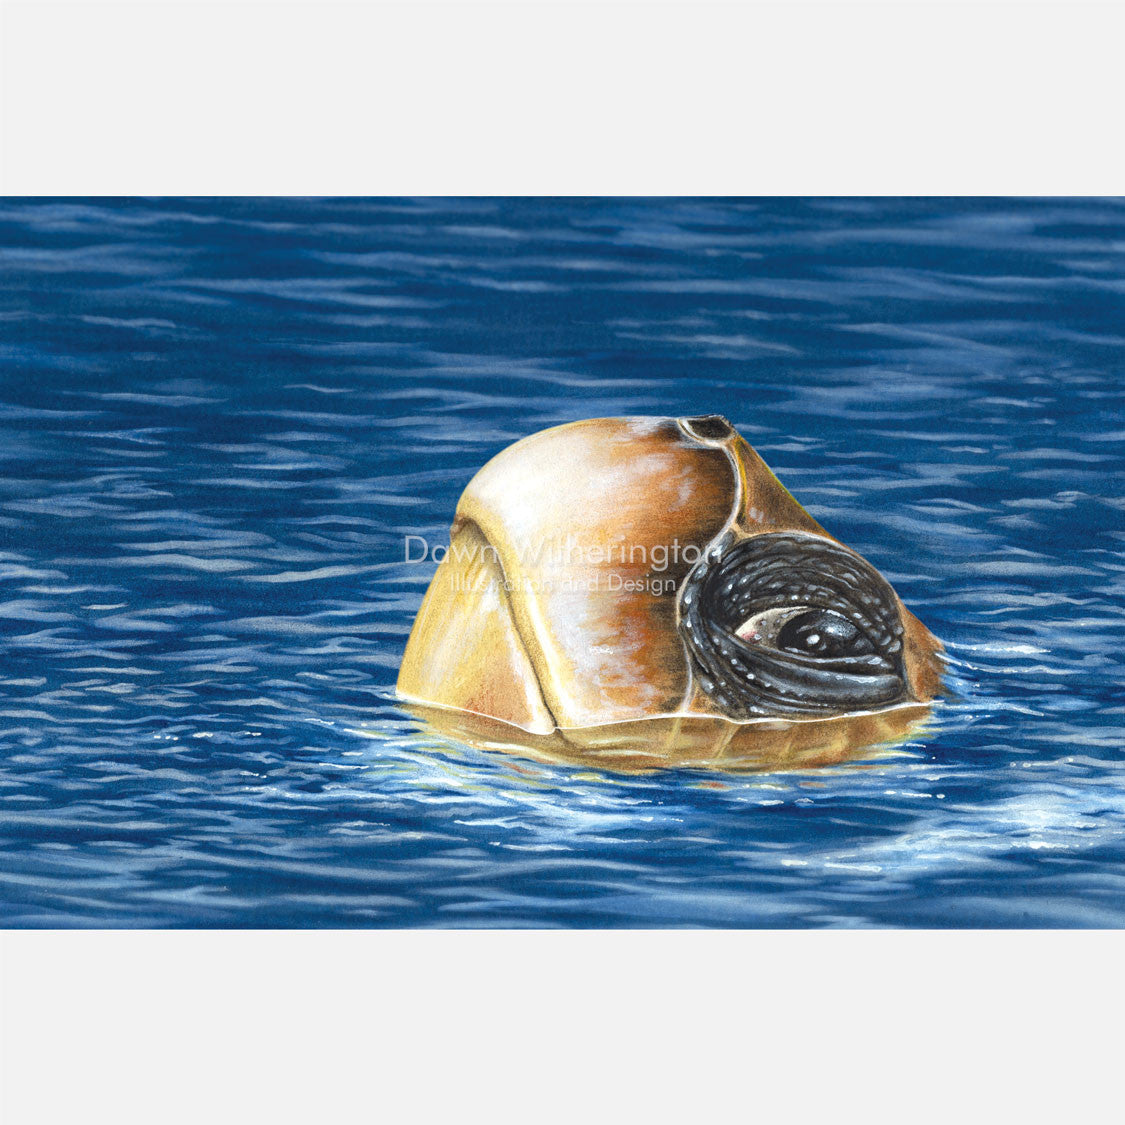 This beautiful illustration is of a loggerhead sea turtle, Caretta caretta, at the surface. 